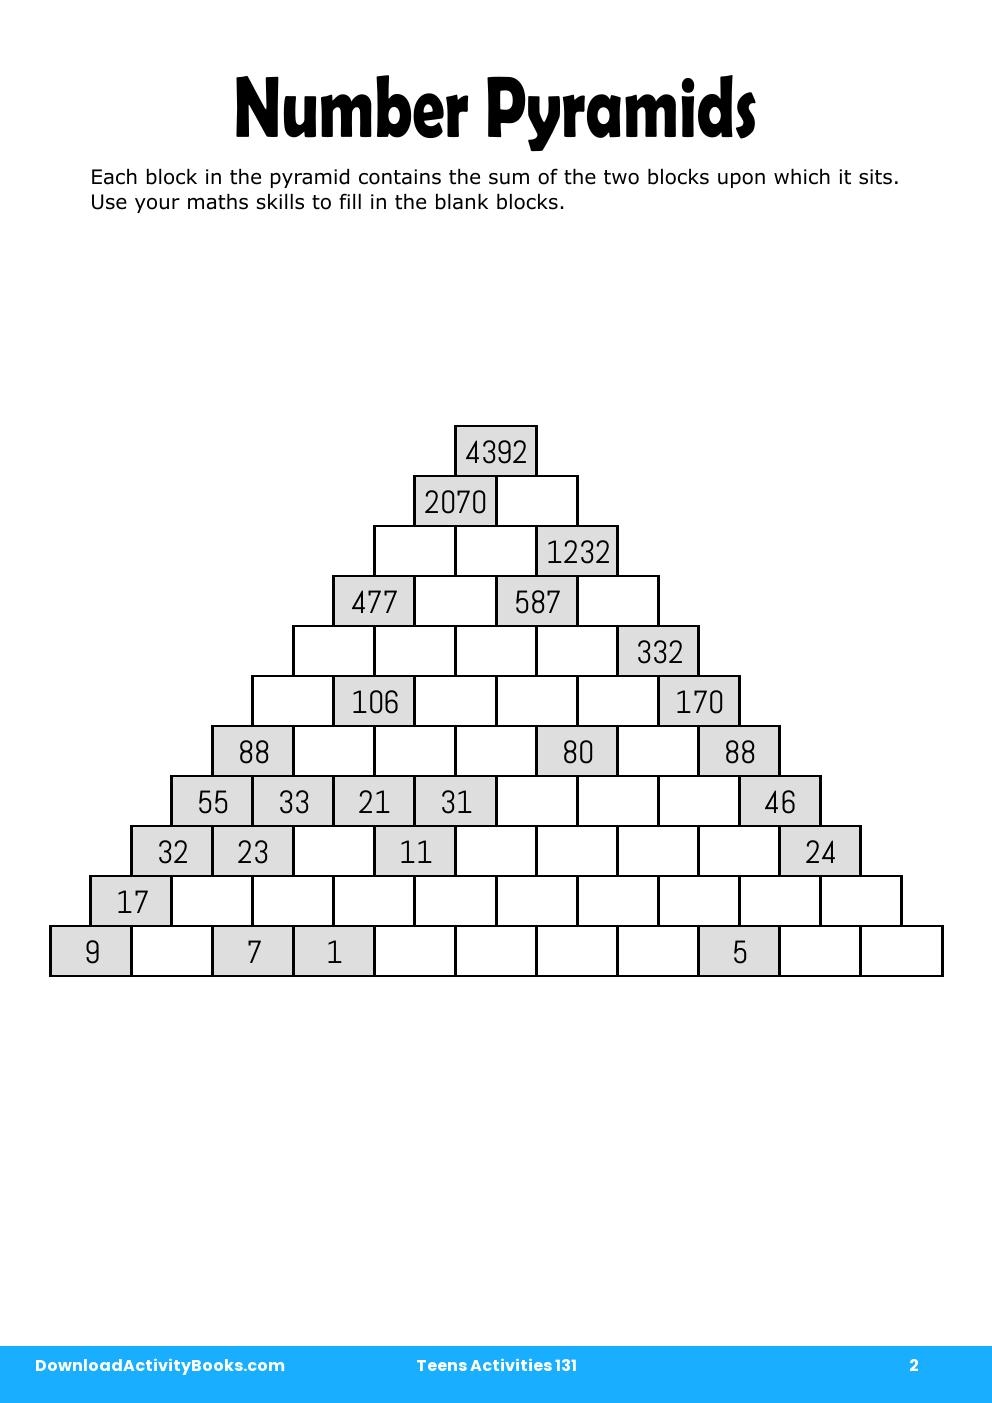 Number Pyramids in Teens Activities 131